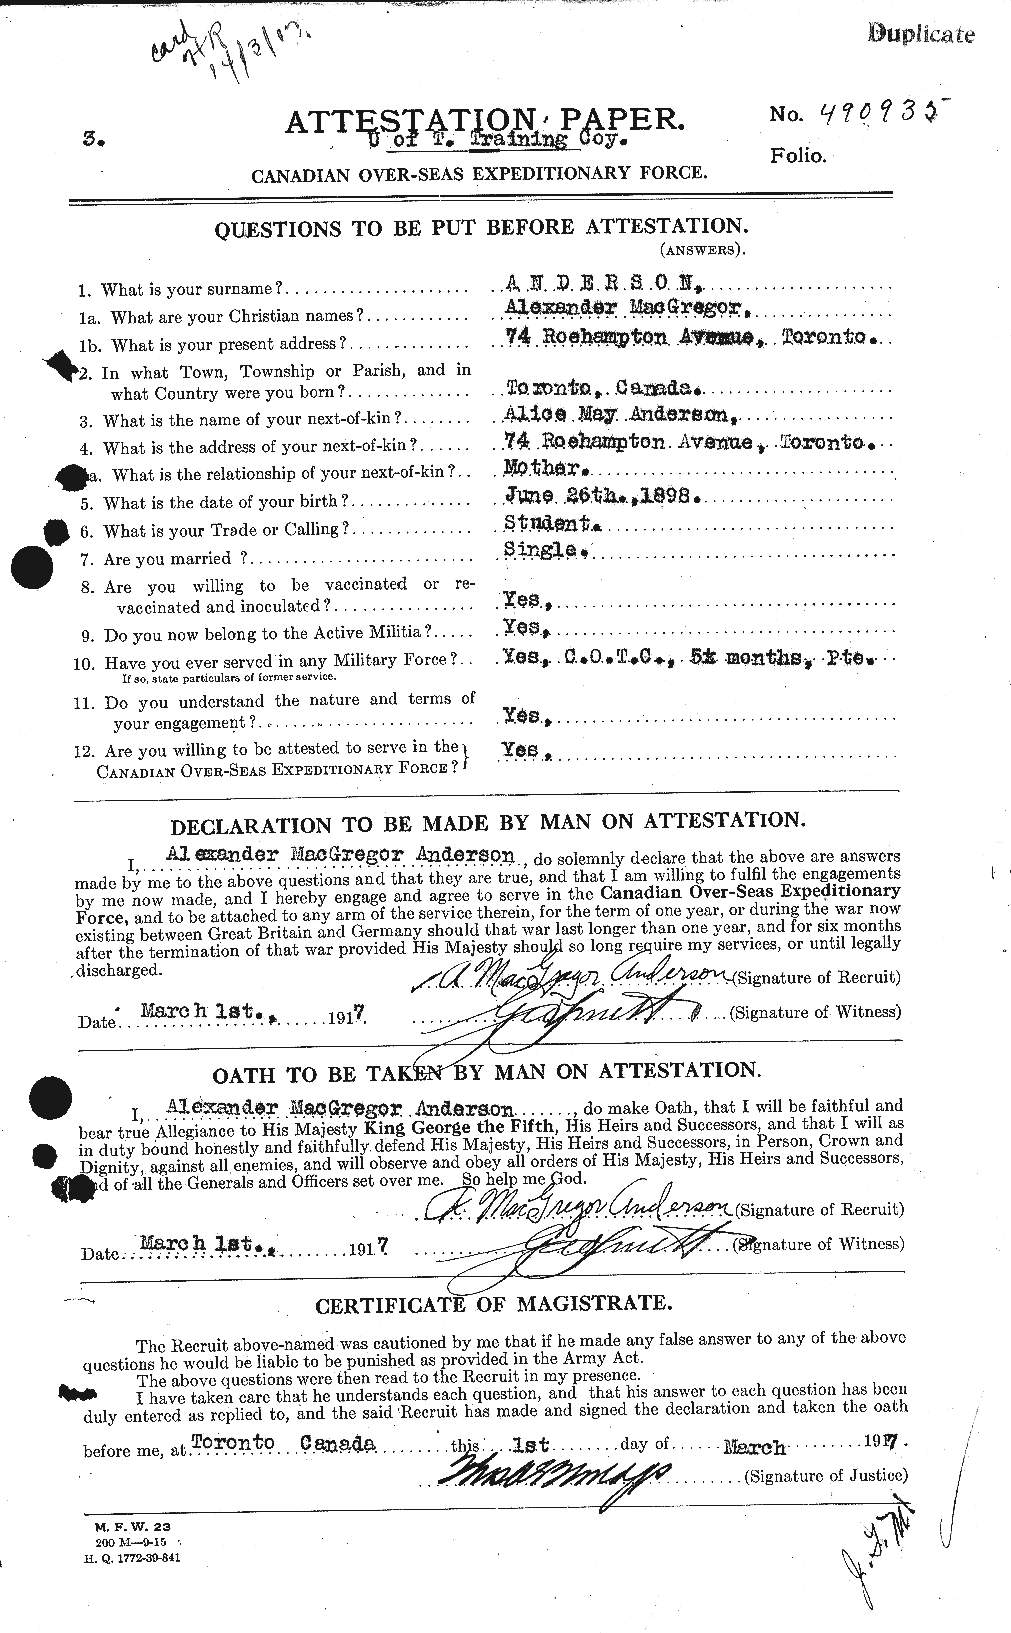 Dossiers du Personnel de la Première Guerre mondiale - CEC 209481a